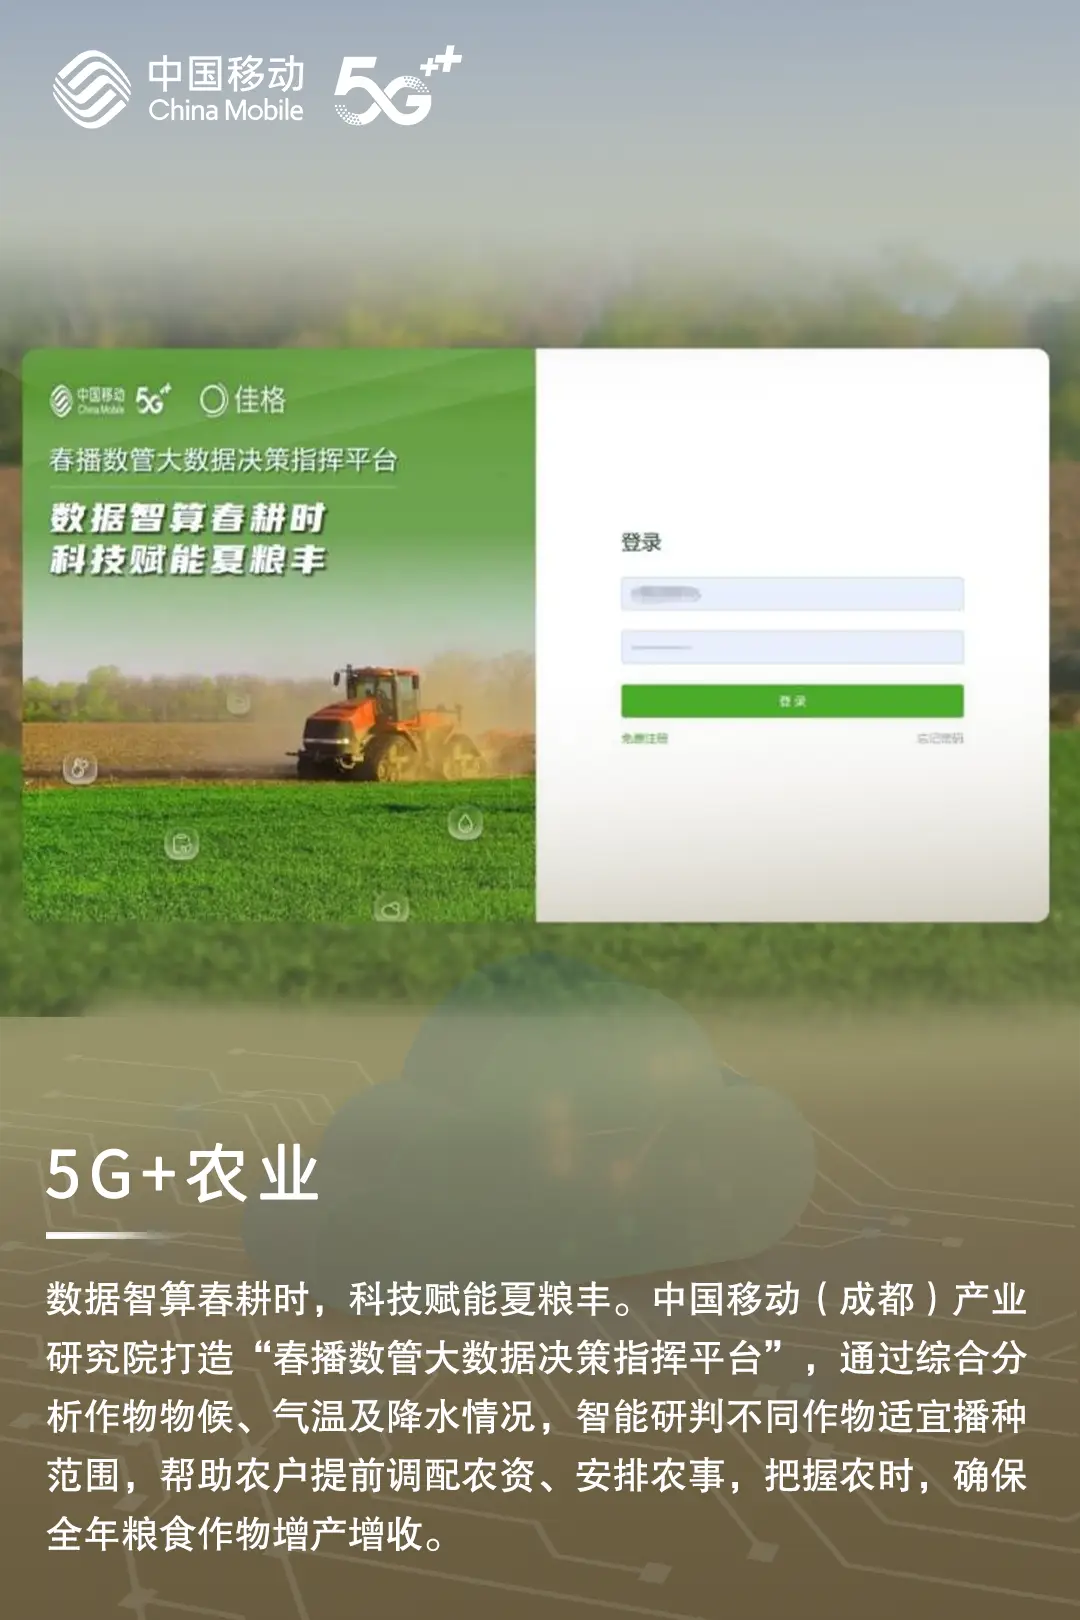 北京：5G 科技引领生活方式变革，手机普及如无声革命  第4张